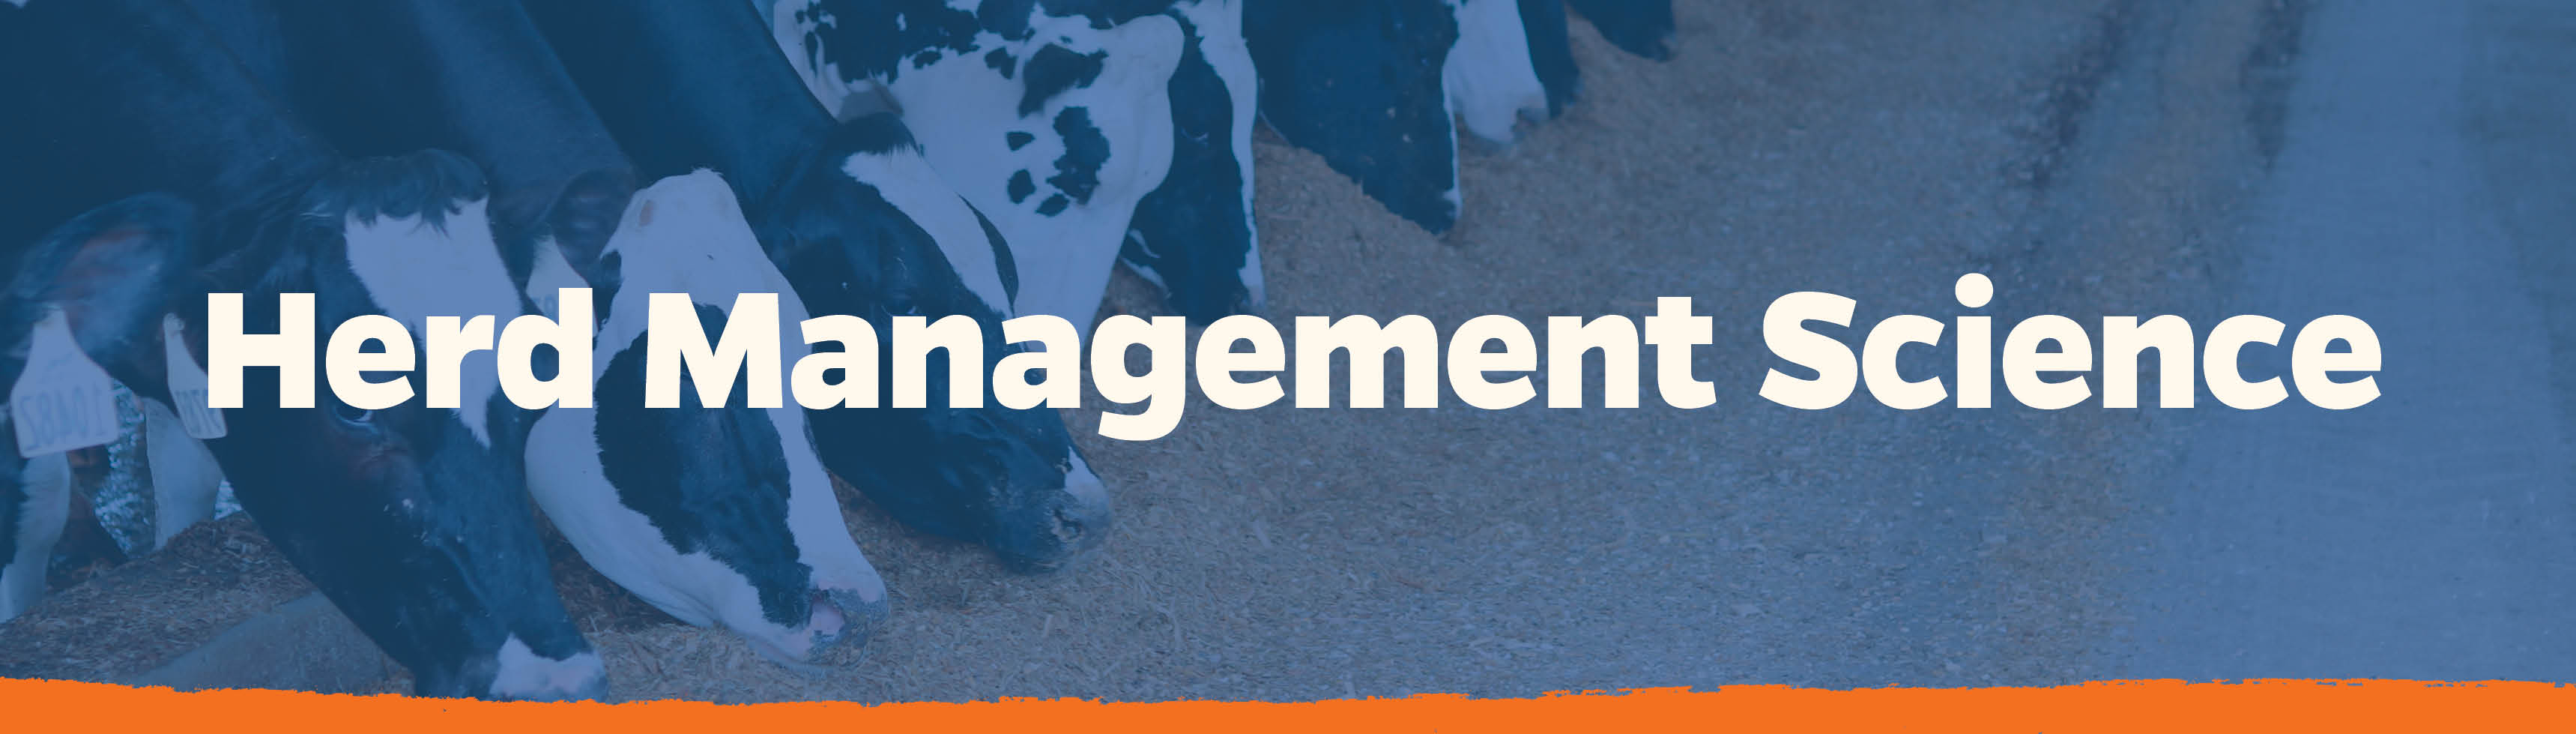 Herd Management Science